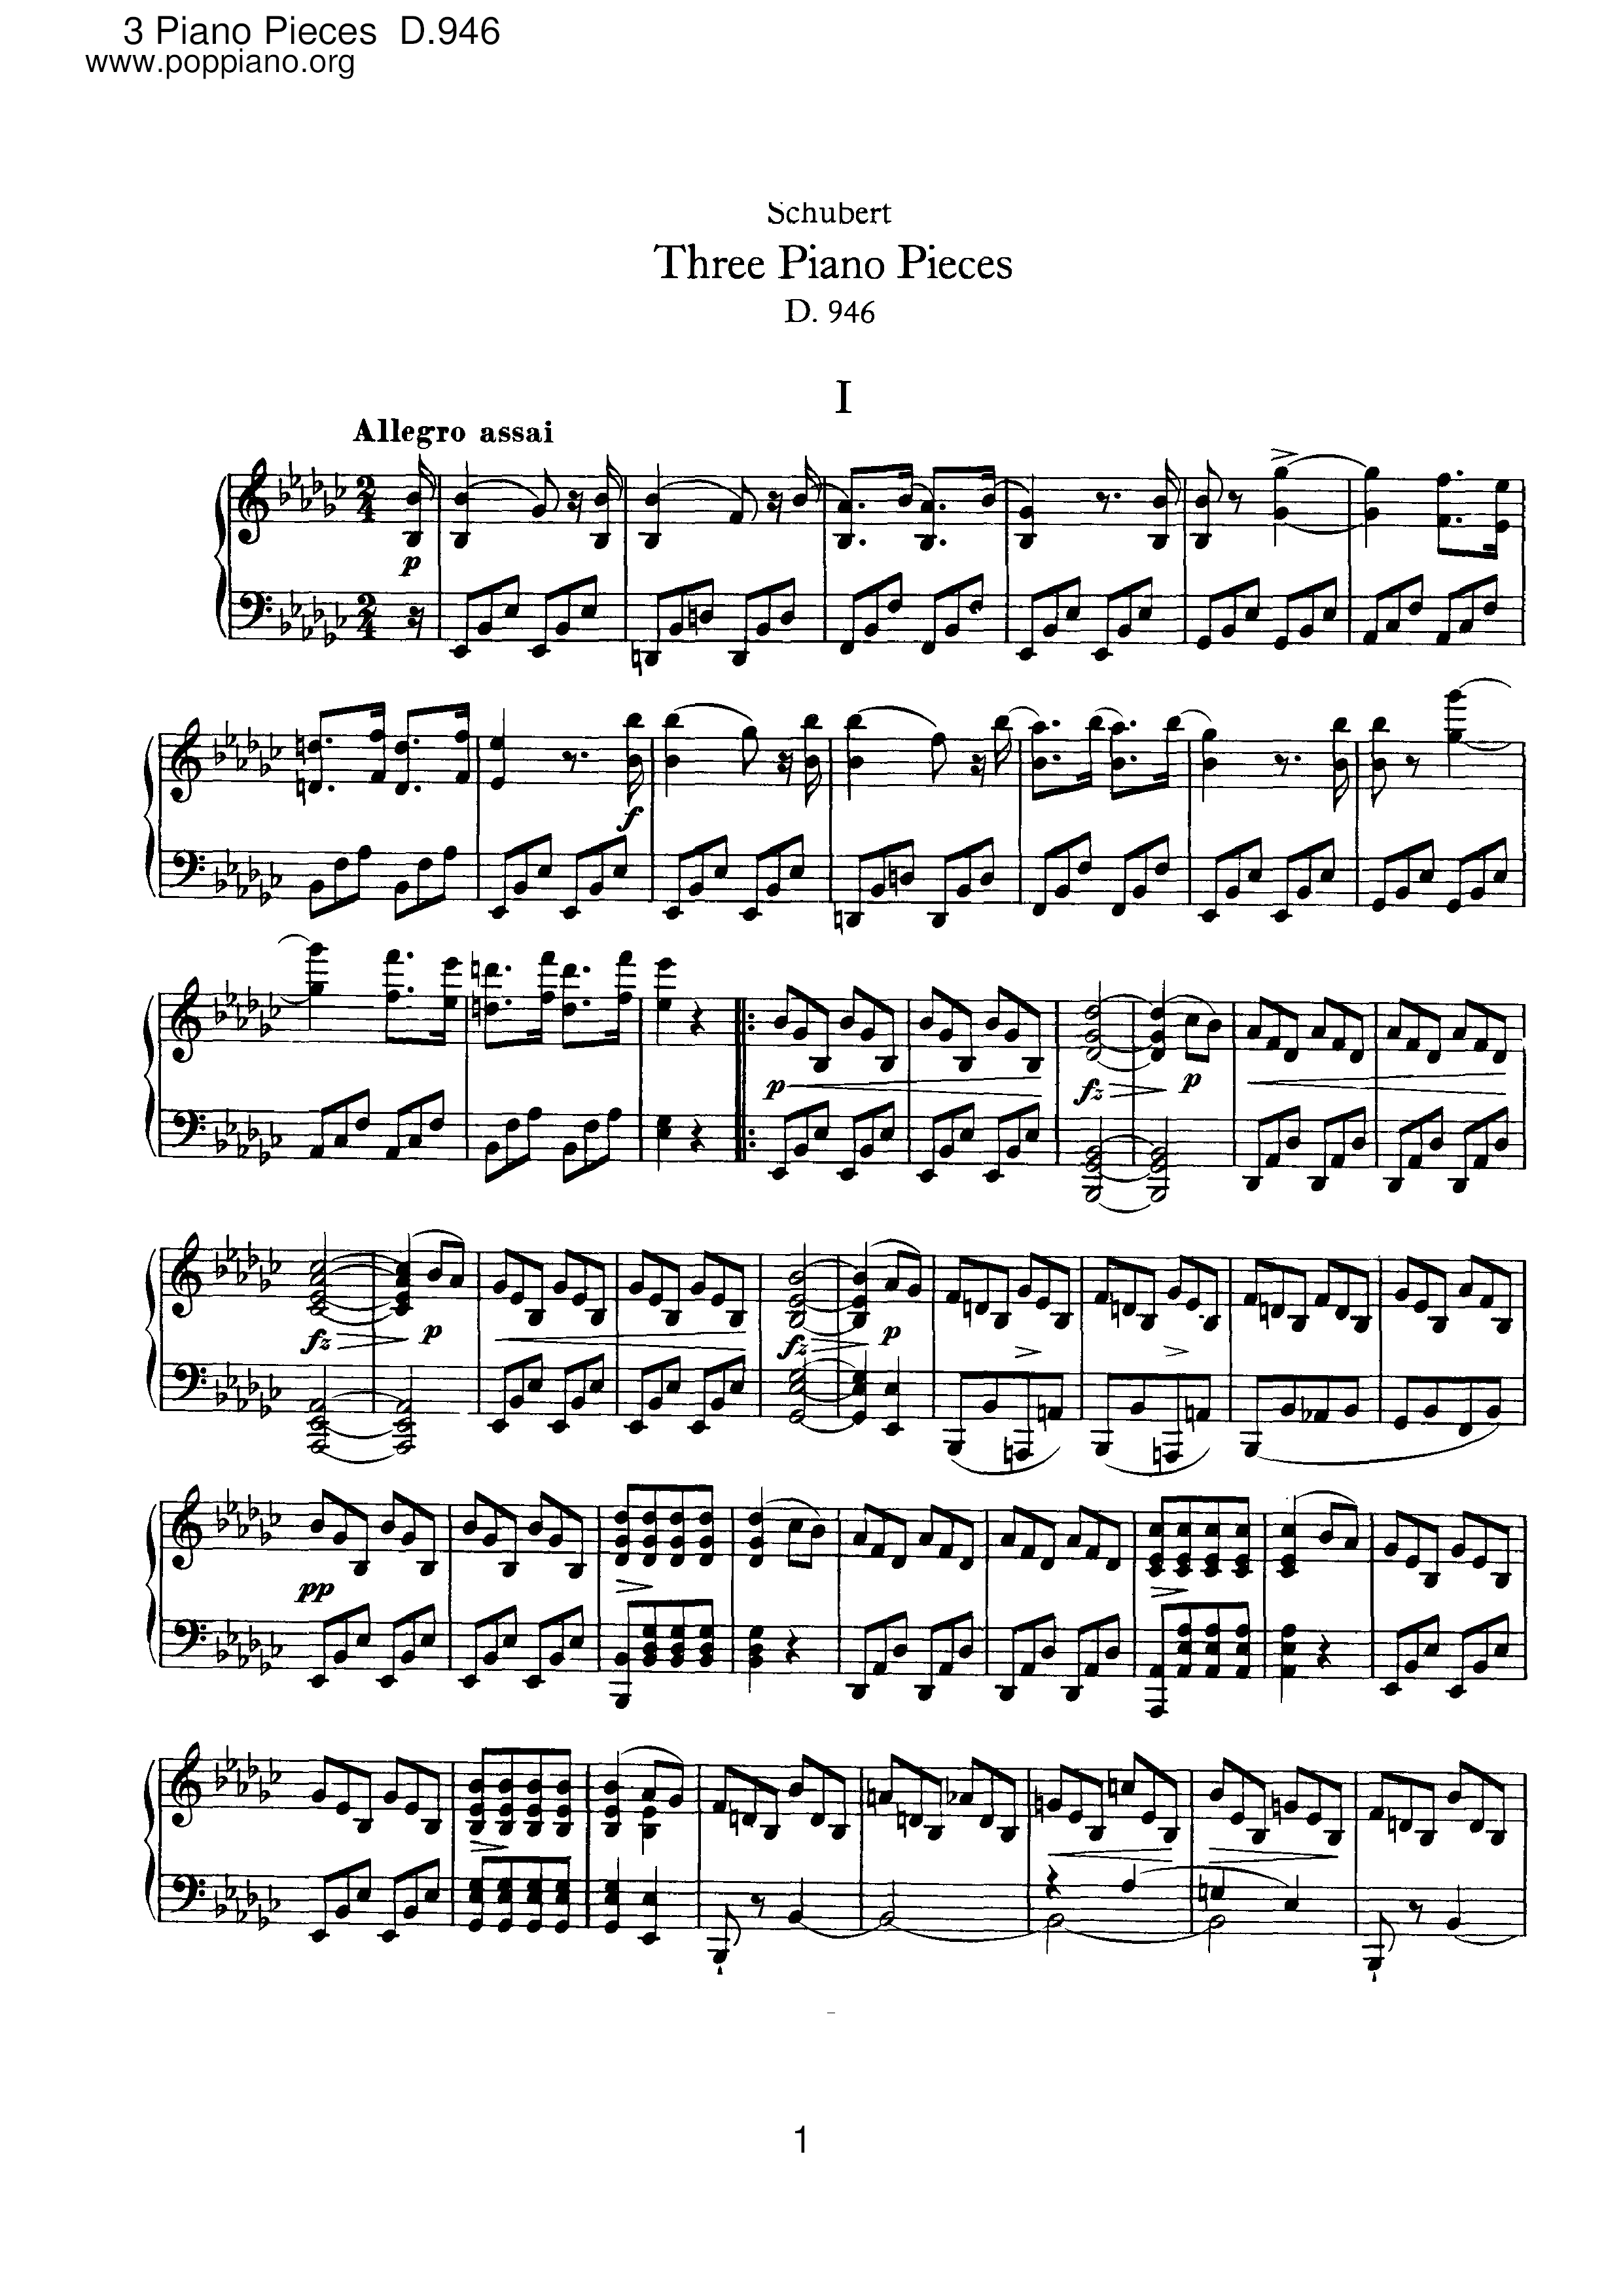 3 Piano Pieces, D.946 Score